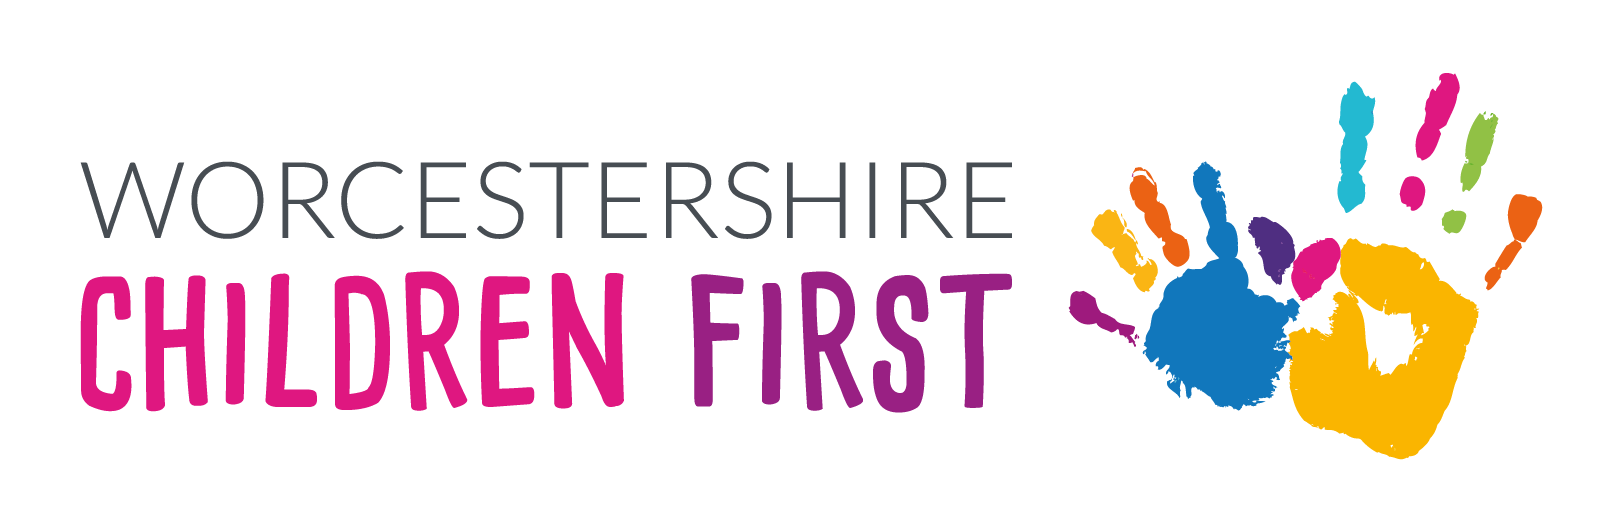 Worcestershire Children First logo.